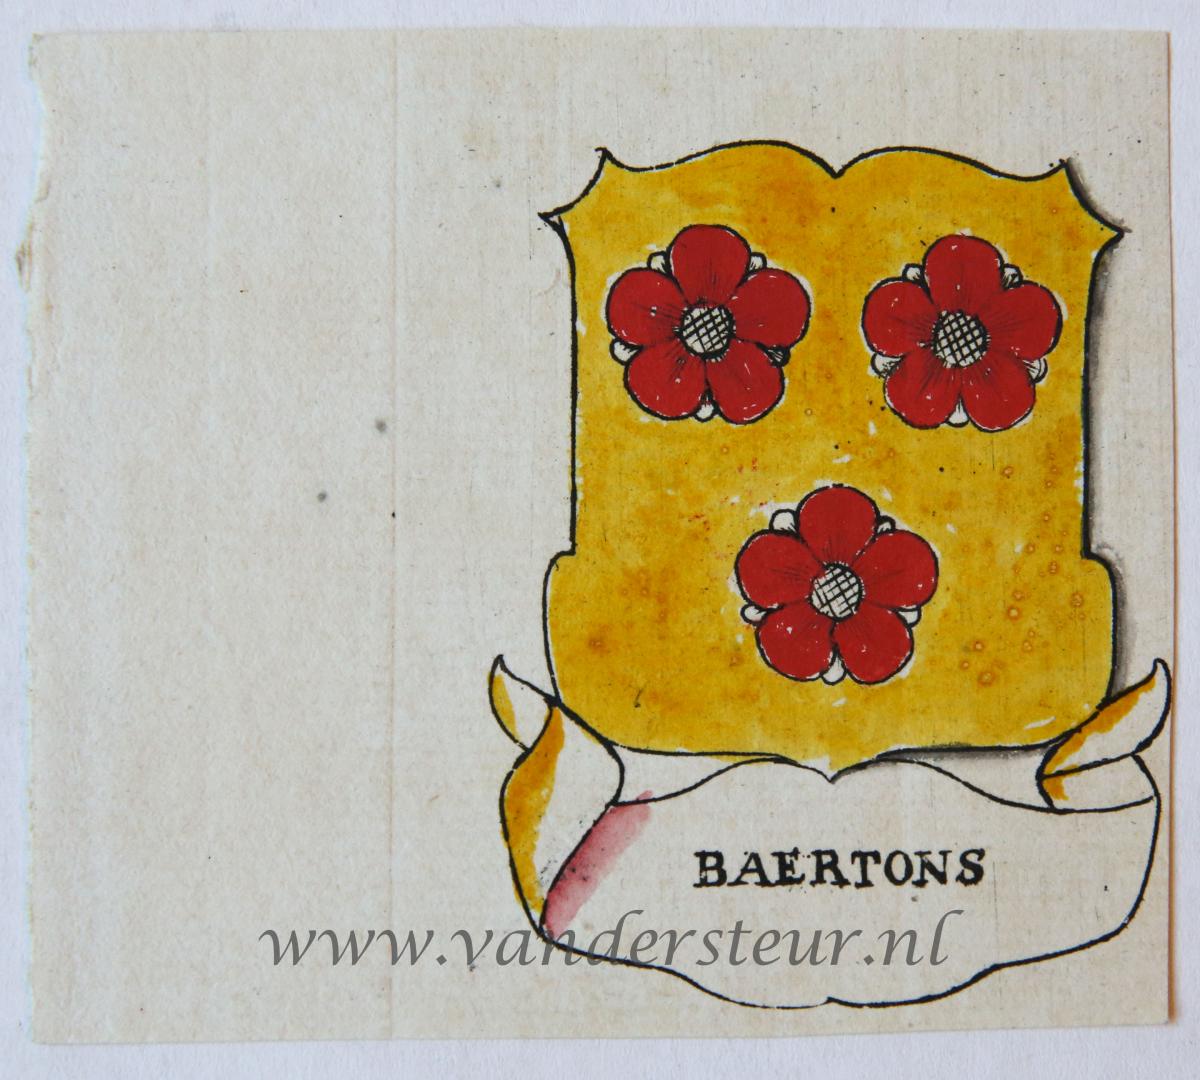 Wapenkaart/Coat of Arms: Baertons